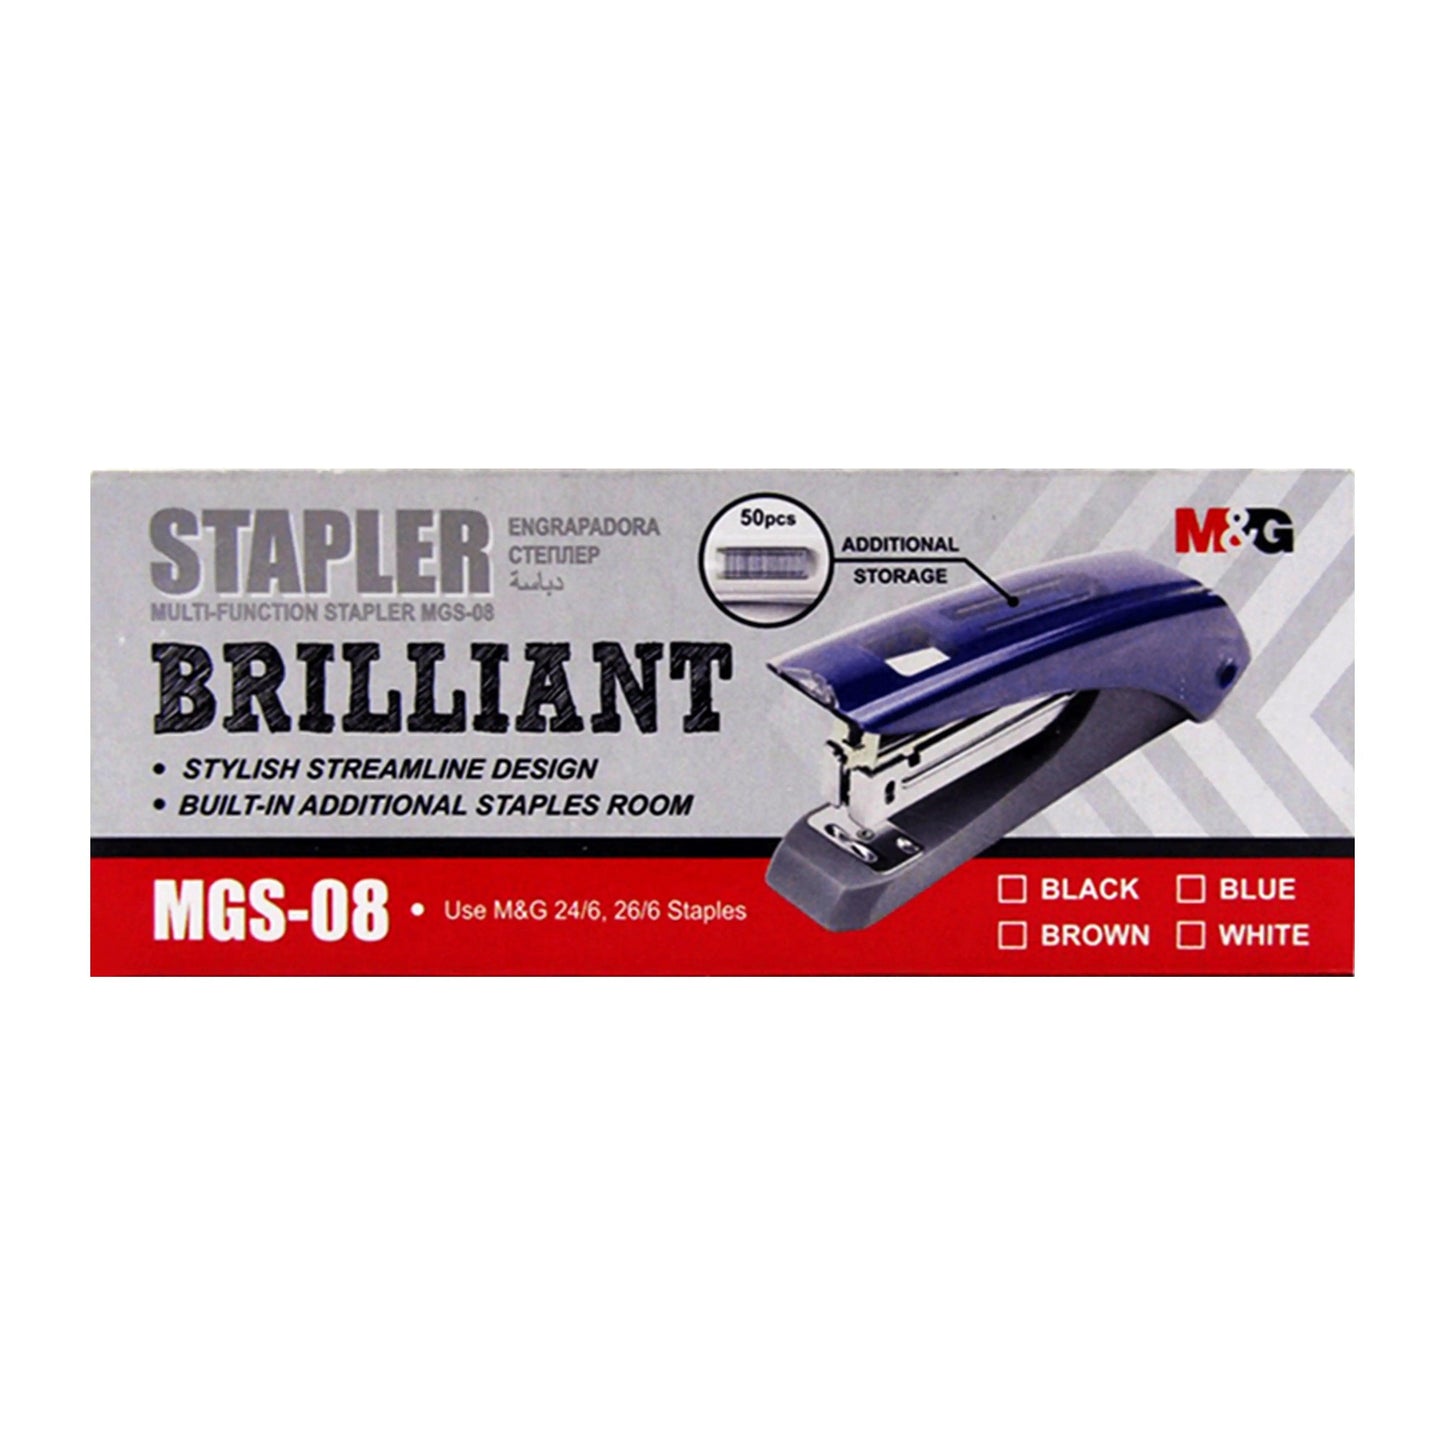 M&G Stapler 24/6 Brilliant M&G